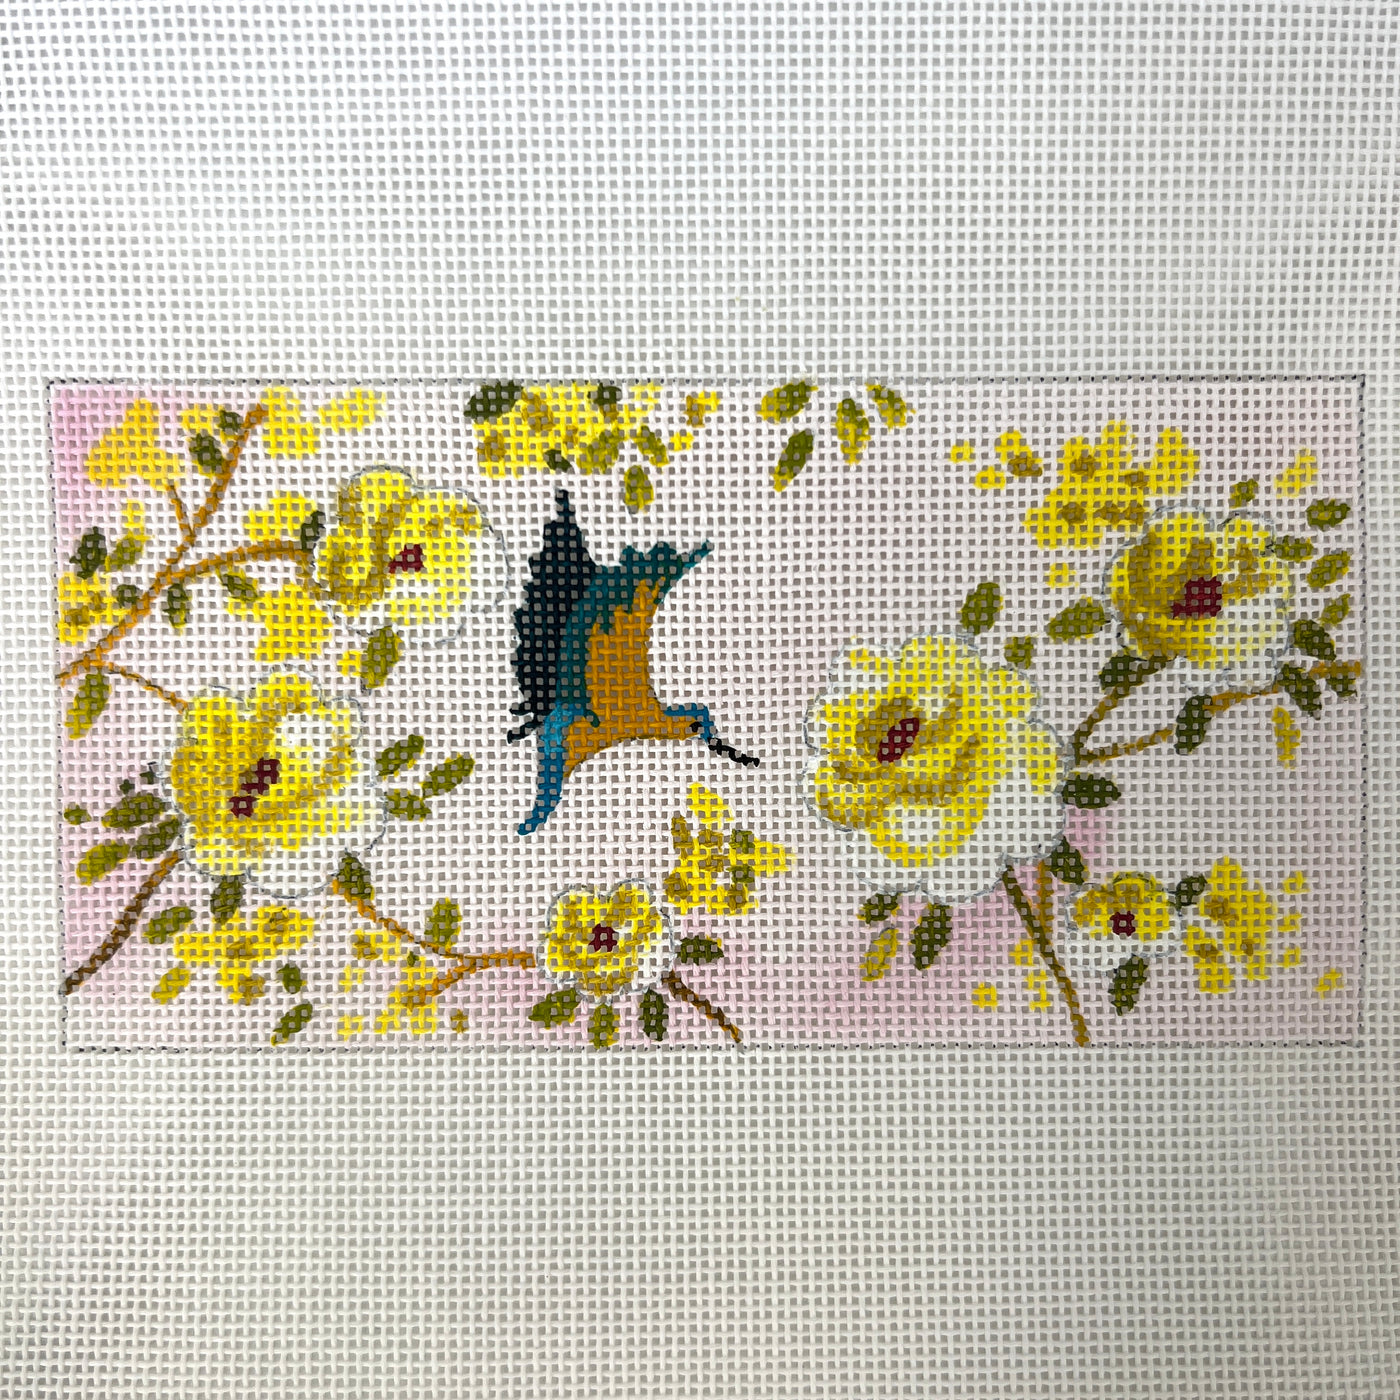 Hummingbird Insert Needlepoint Canvas